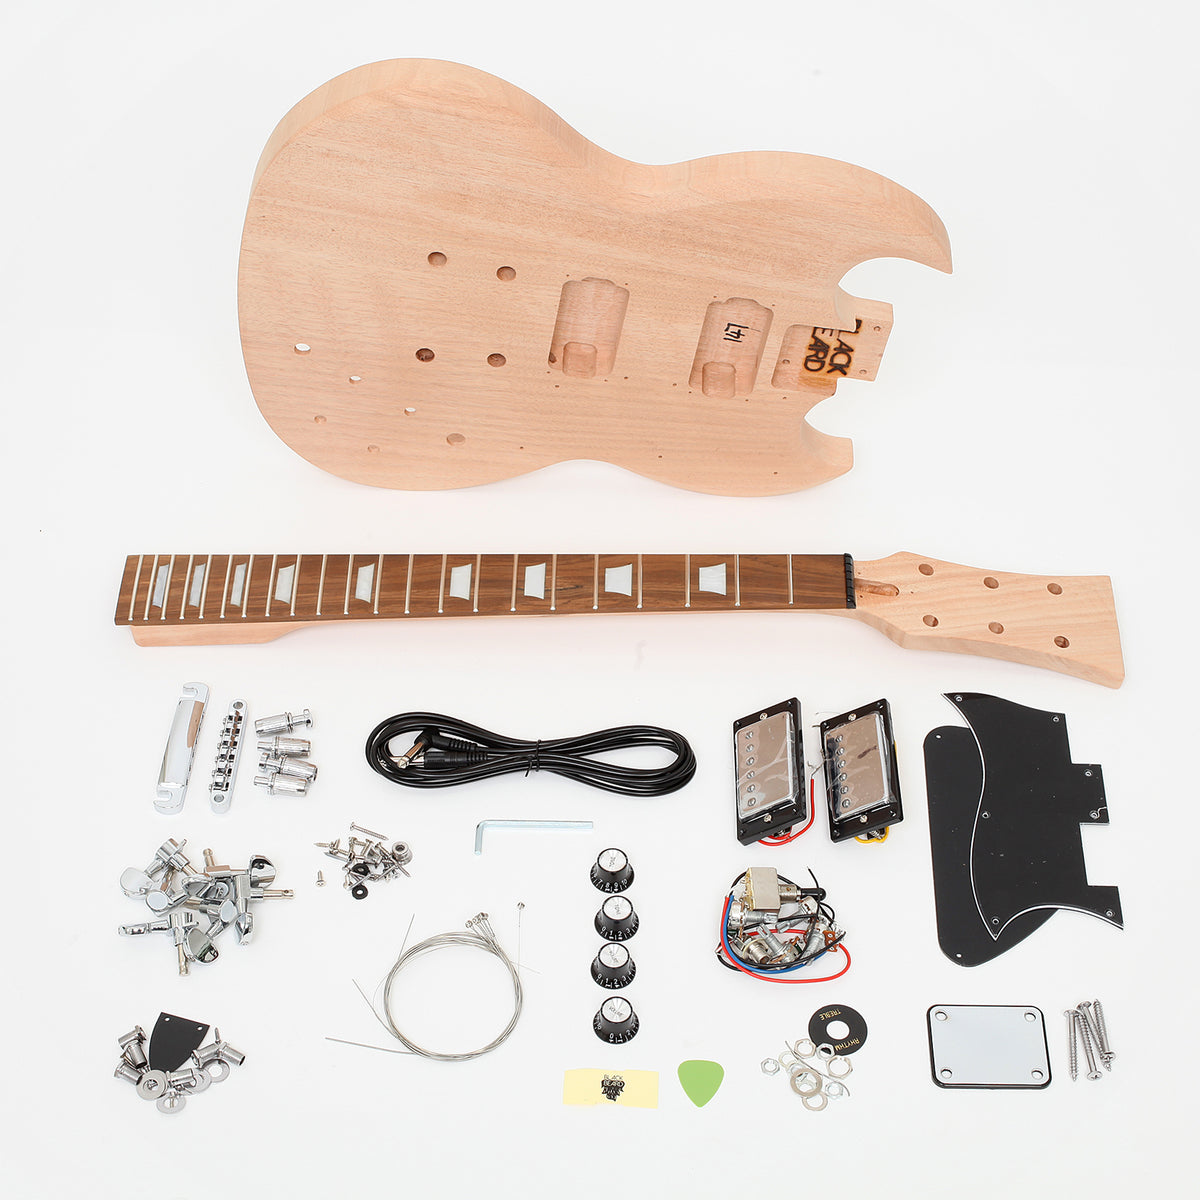 TwinPeak Axe Guitar Kit